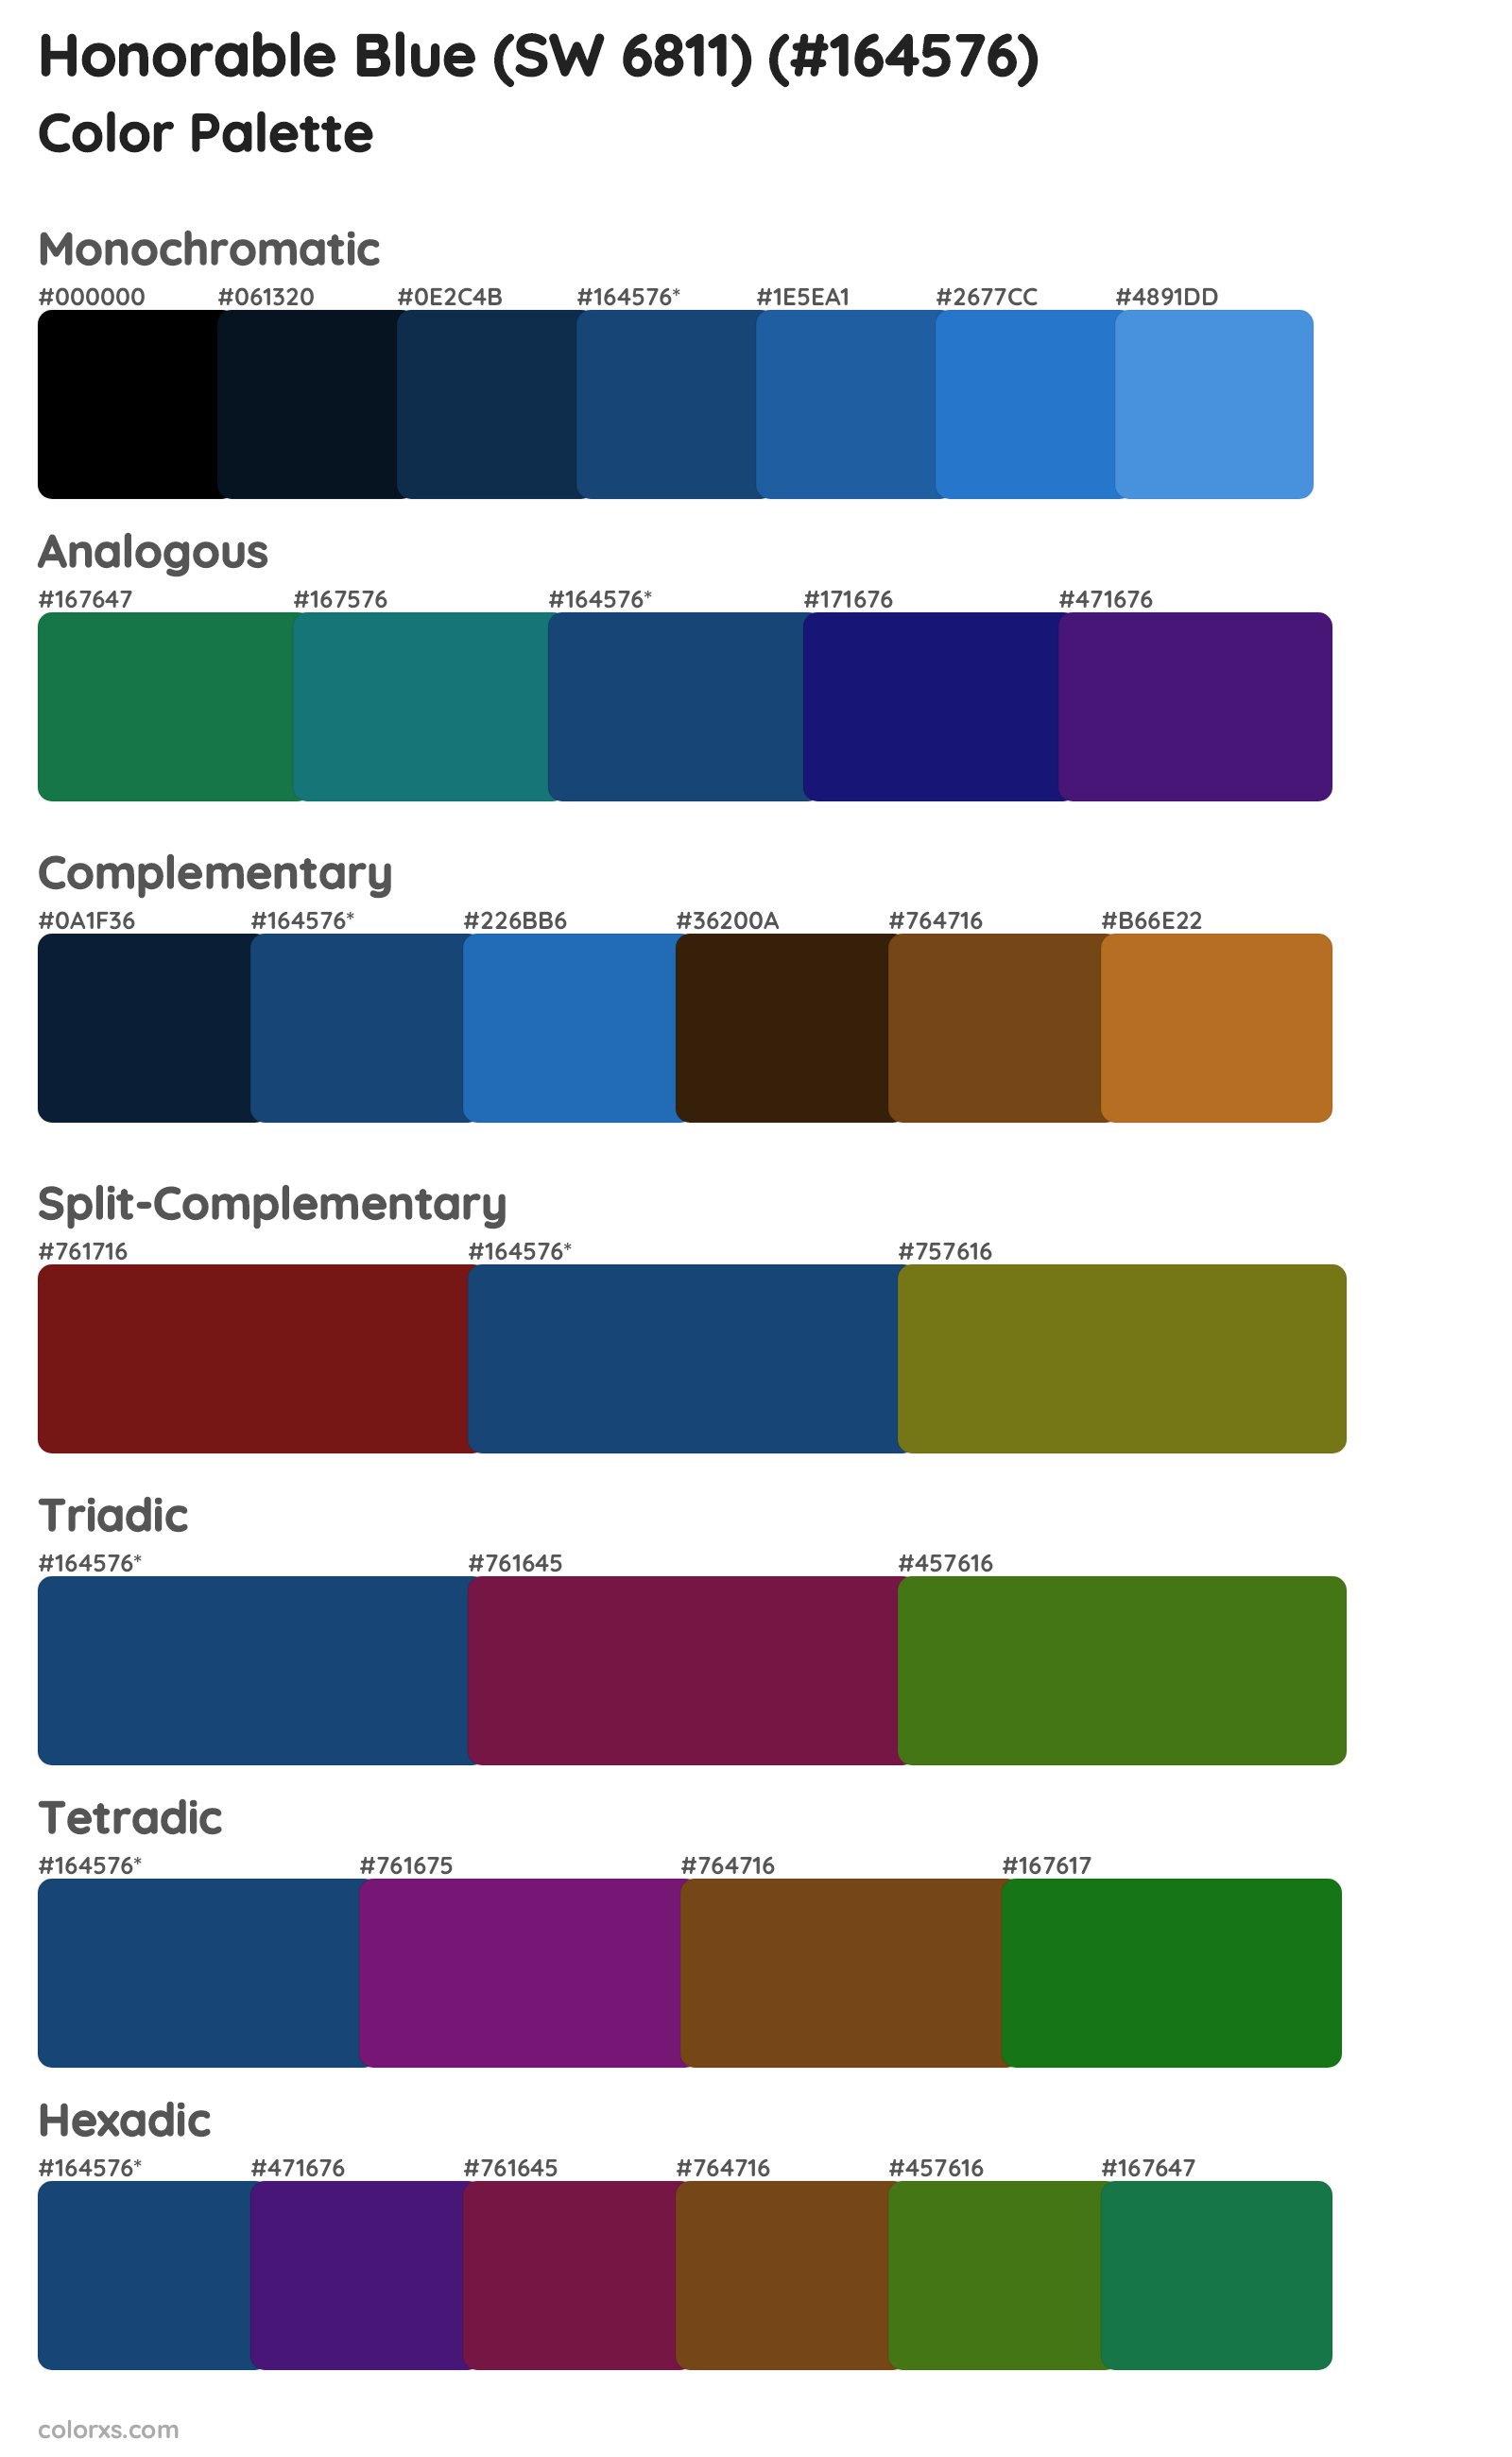 Honorable Blue (SW 6811) Color Scheme Palettes